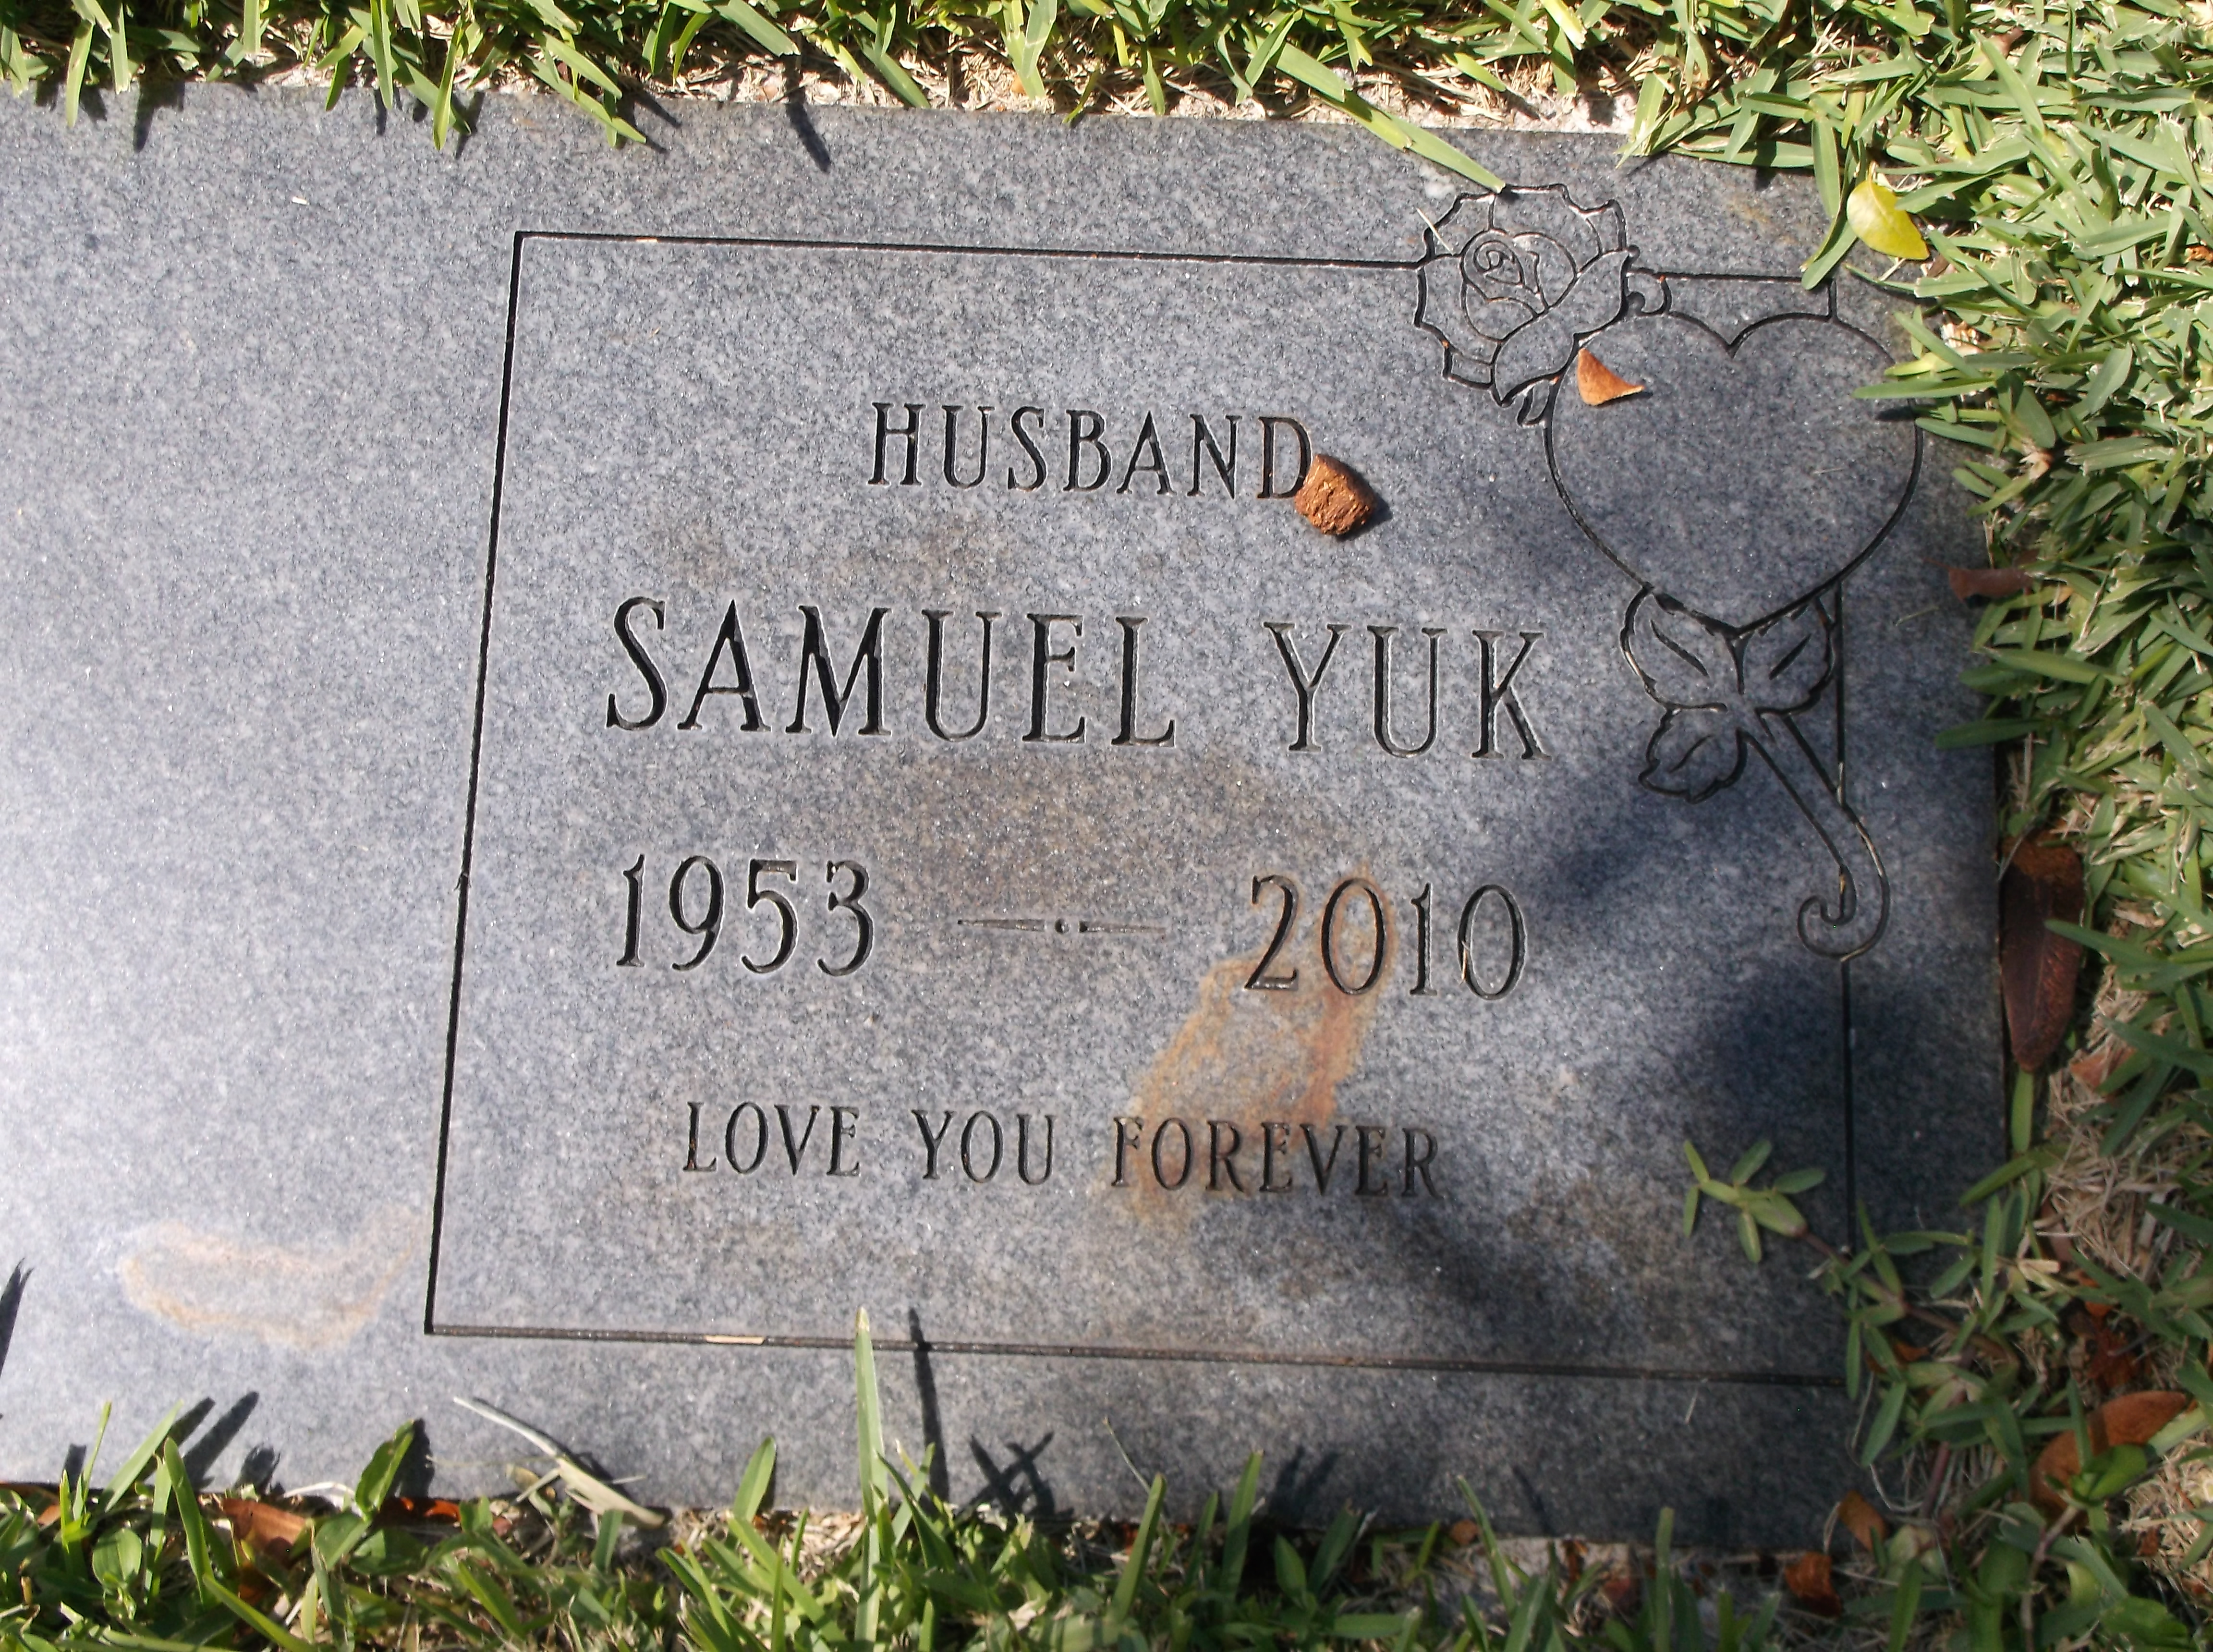 Samuel Yuk